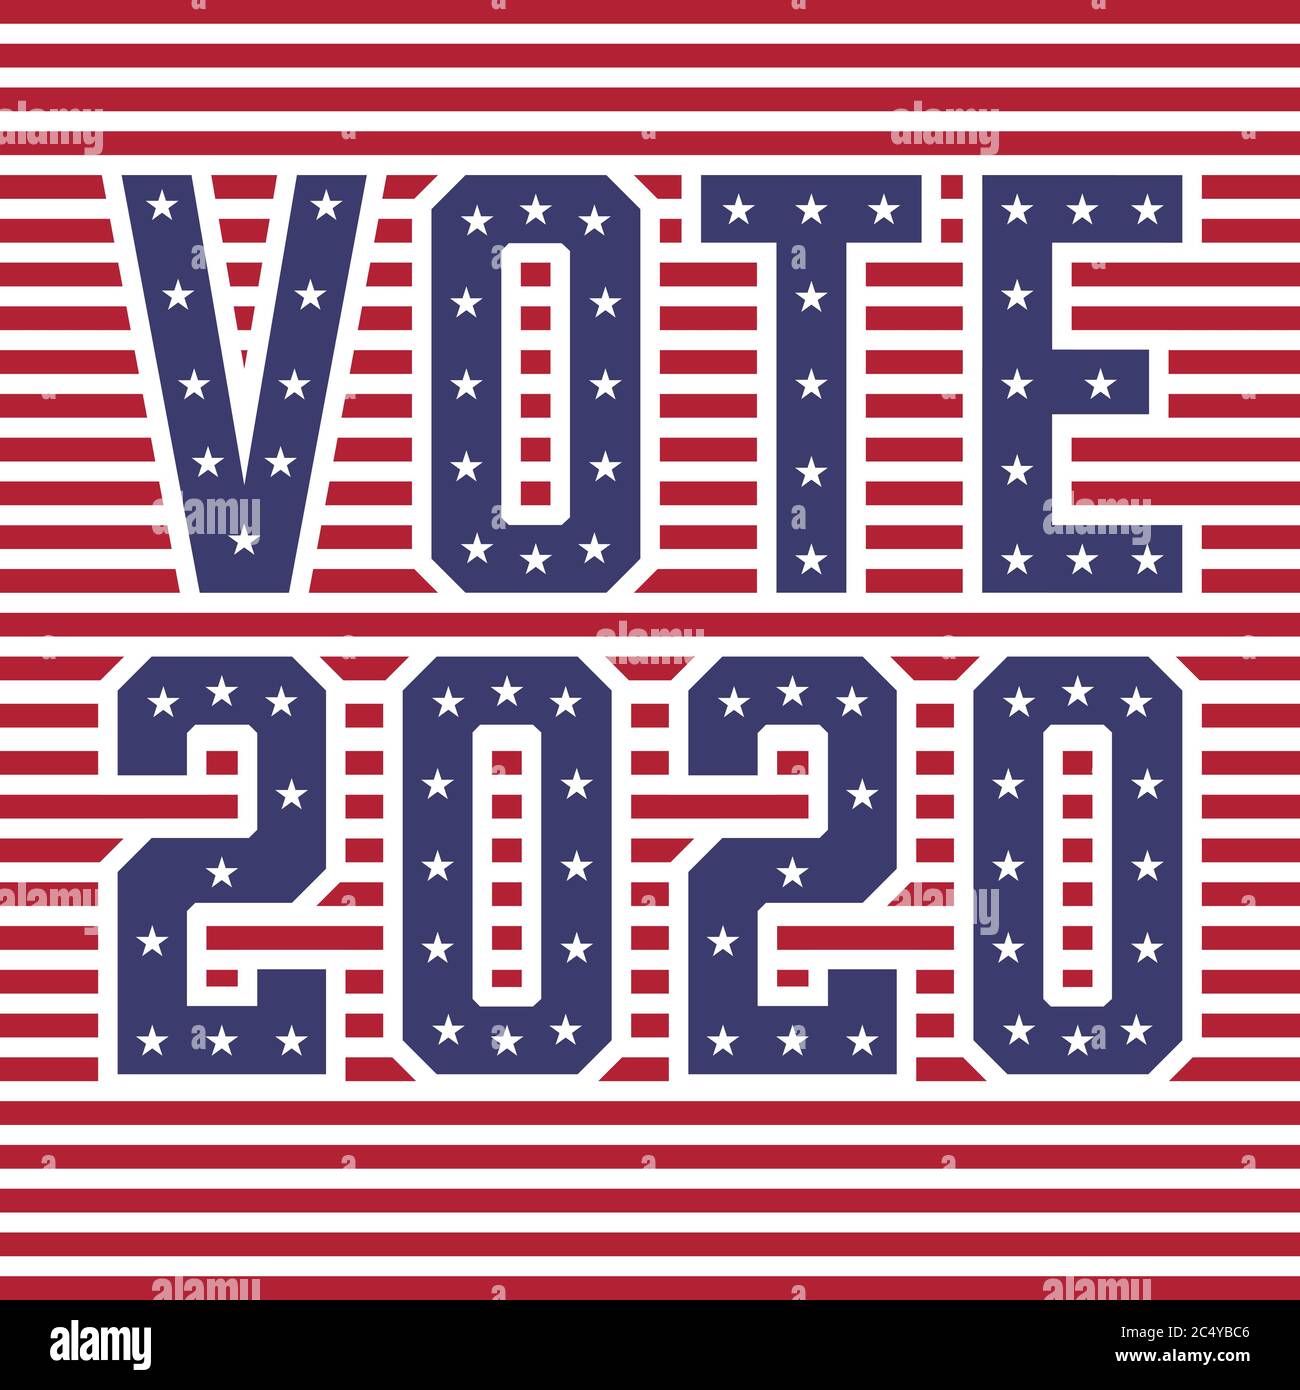 Vereinigte Staaten von Amerika (USA) Wahlen STIMMEN 2020 mit Stars and Stripes Konzept Vektor Illustration Stock Vektor